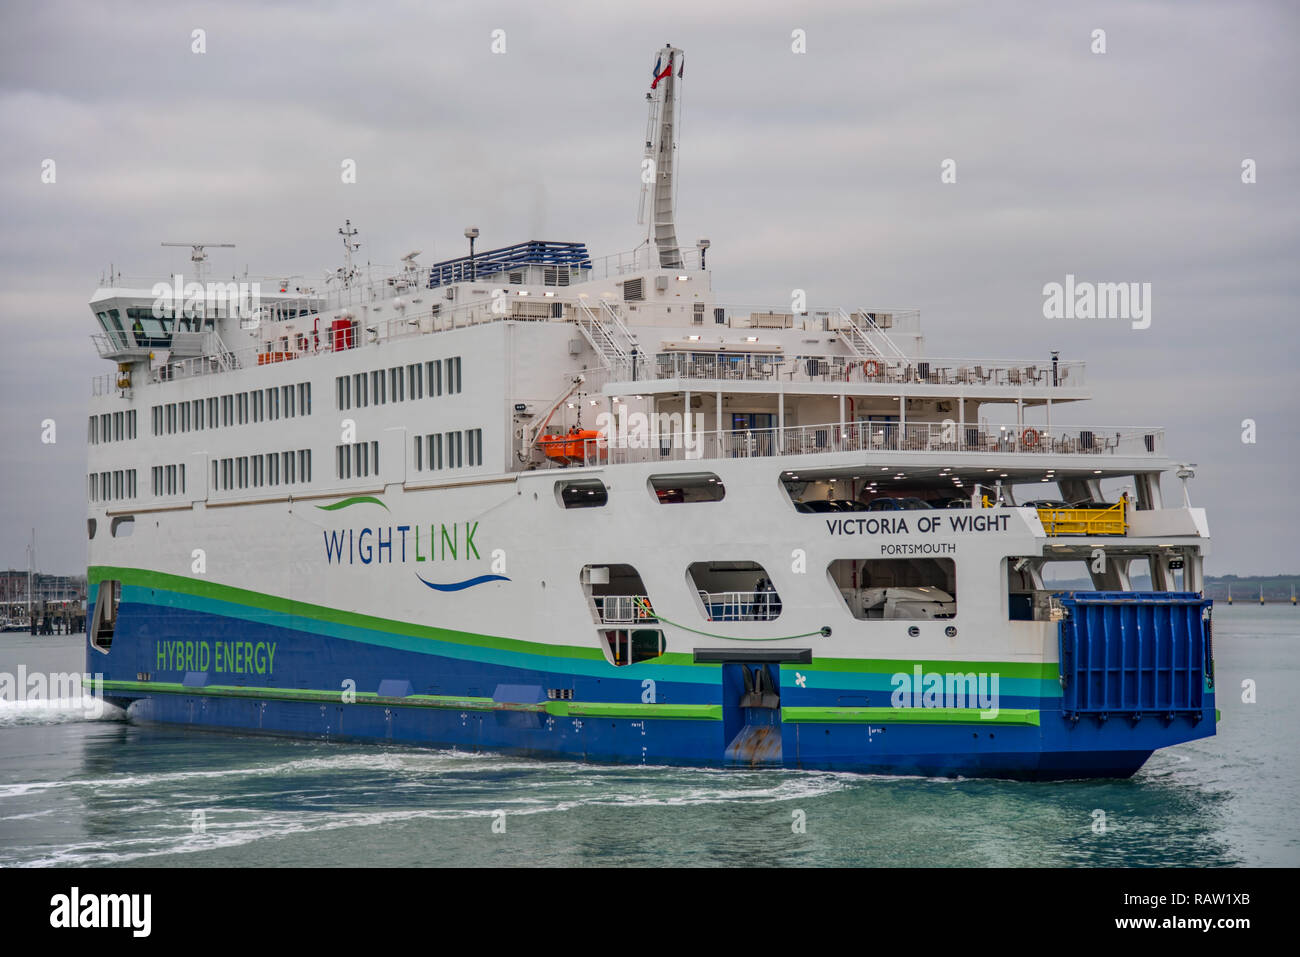 Wightlink Car Ferry MV Victoria of Wight nel porto di Portsmouth, Regno Unito il 3/1/19 prepararsi a sbarcare veicoli e passeggeri al terminal dei traghetti. Foto Stock